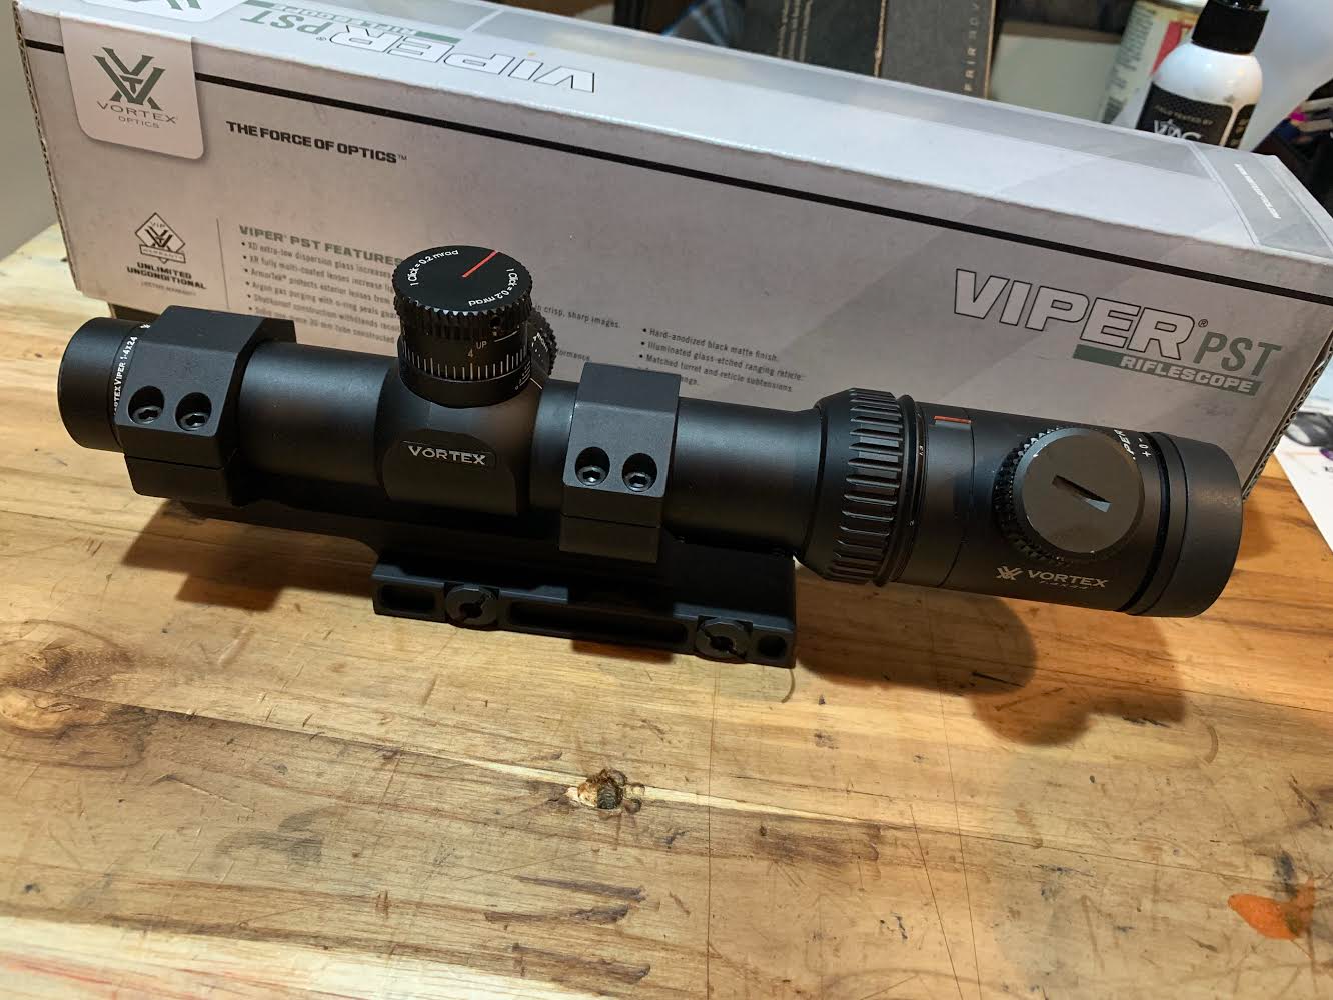 Vortex Viper Pst 1 4x24 Riflescope Tmcq Mrad Reticle W Qd Mi Mount